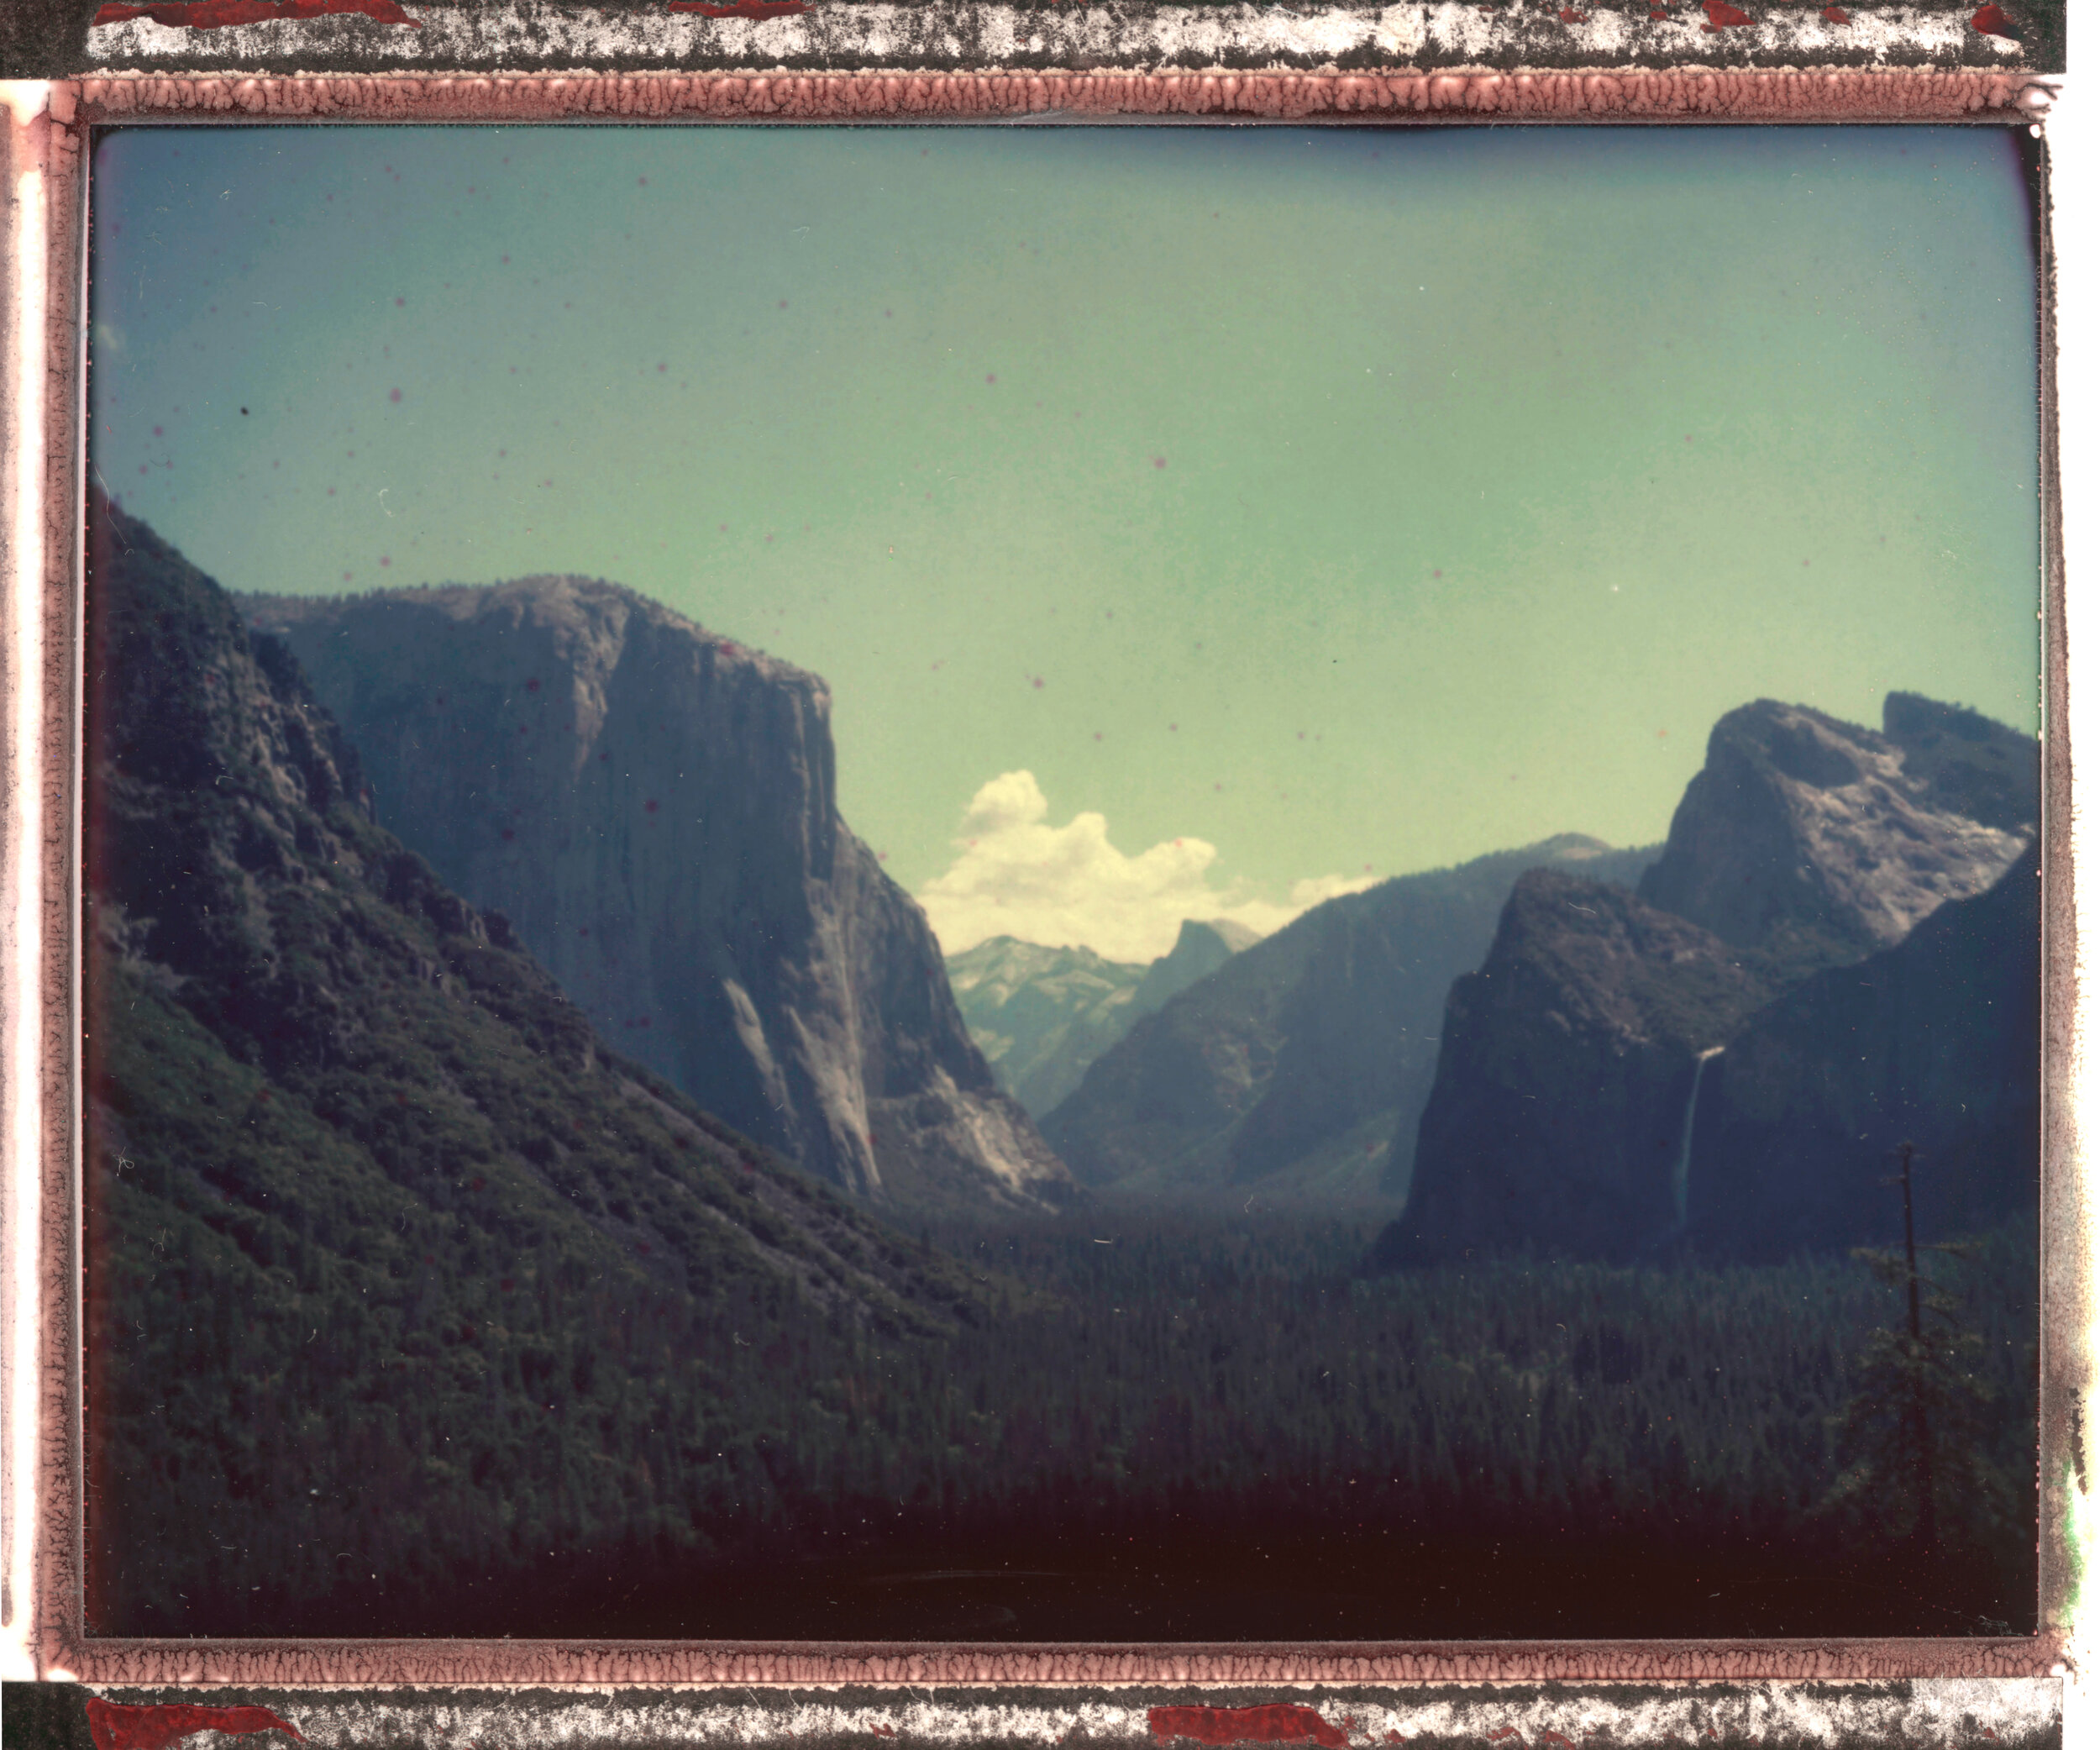 YosemiteValley.jpg